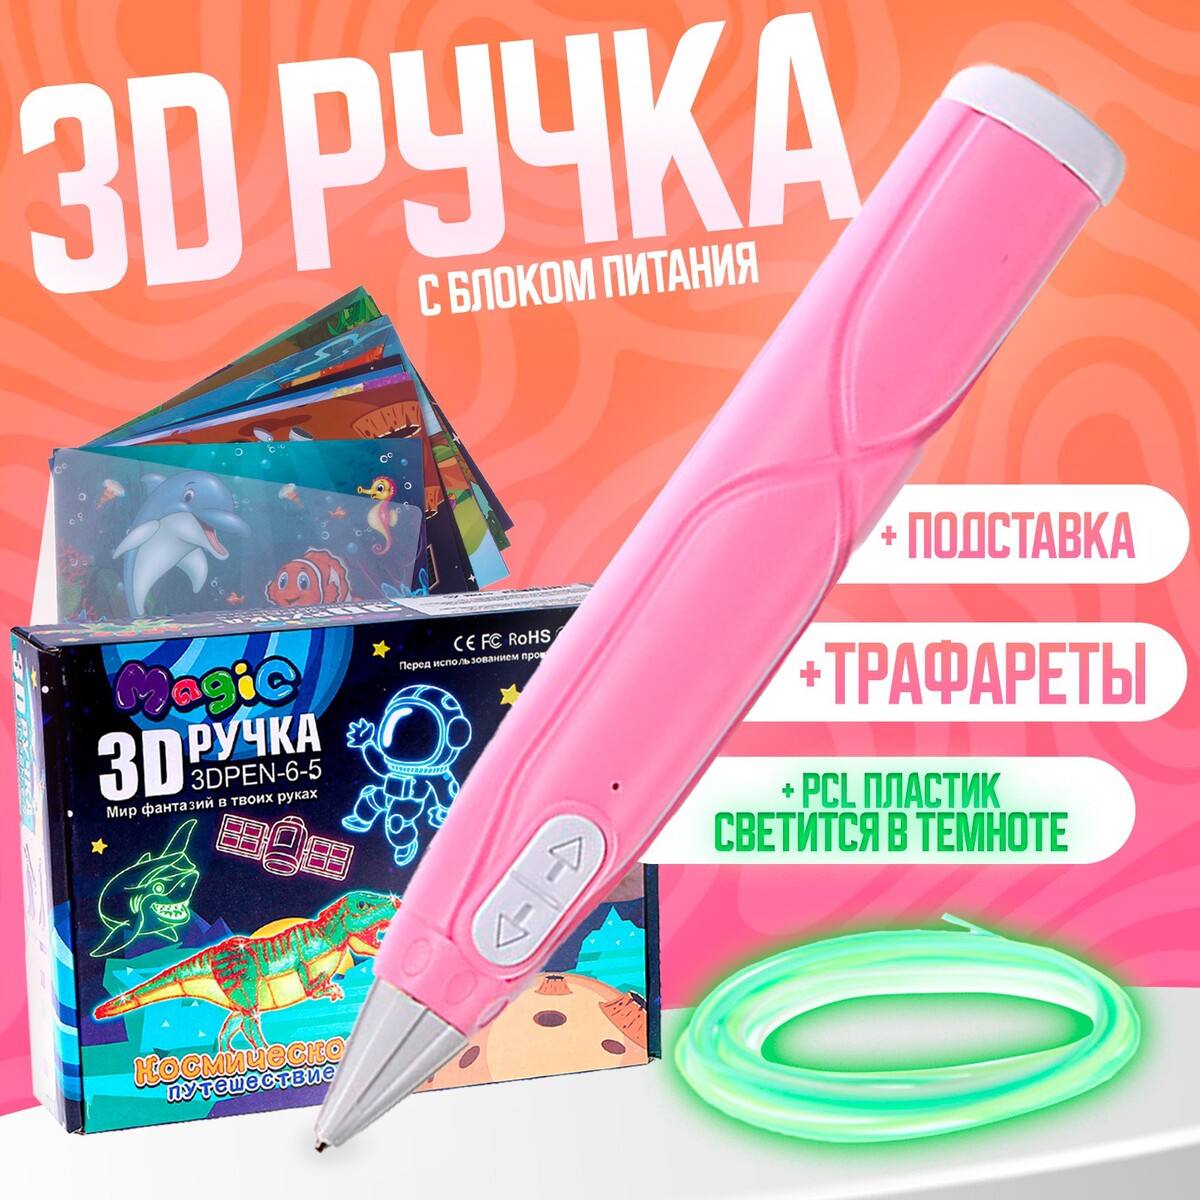 3d ручка, набор pcl пластика светящегося в темноте, мод. pn013, цвет розовый бусина из пластика